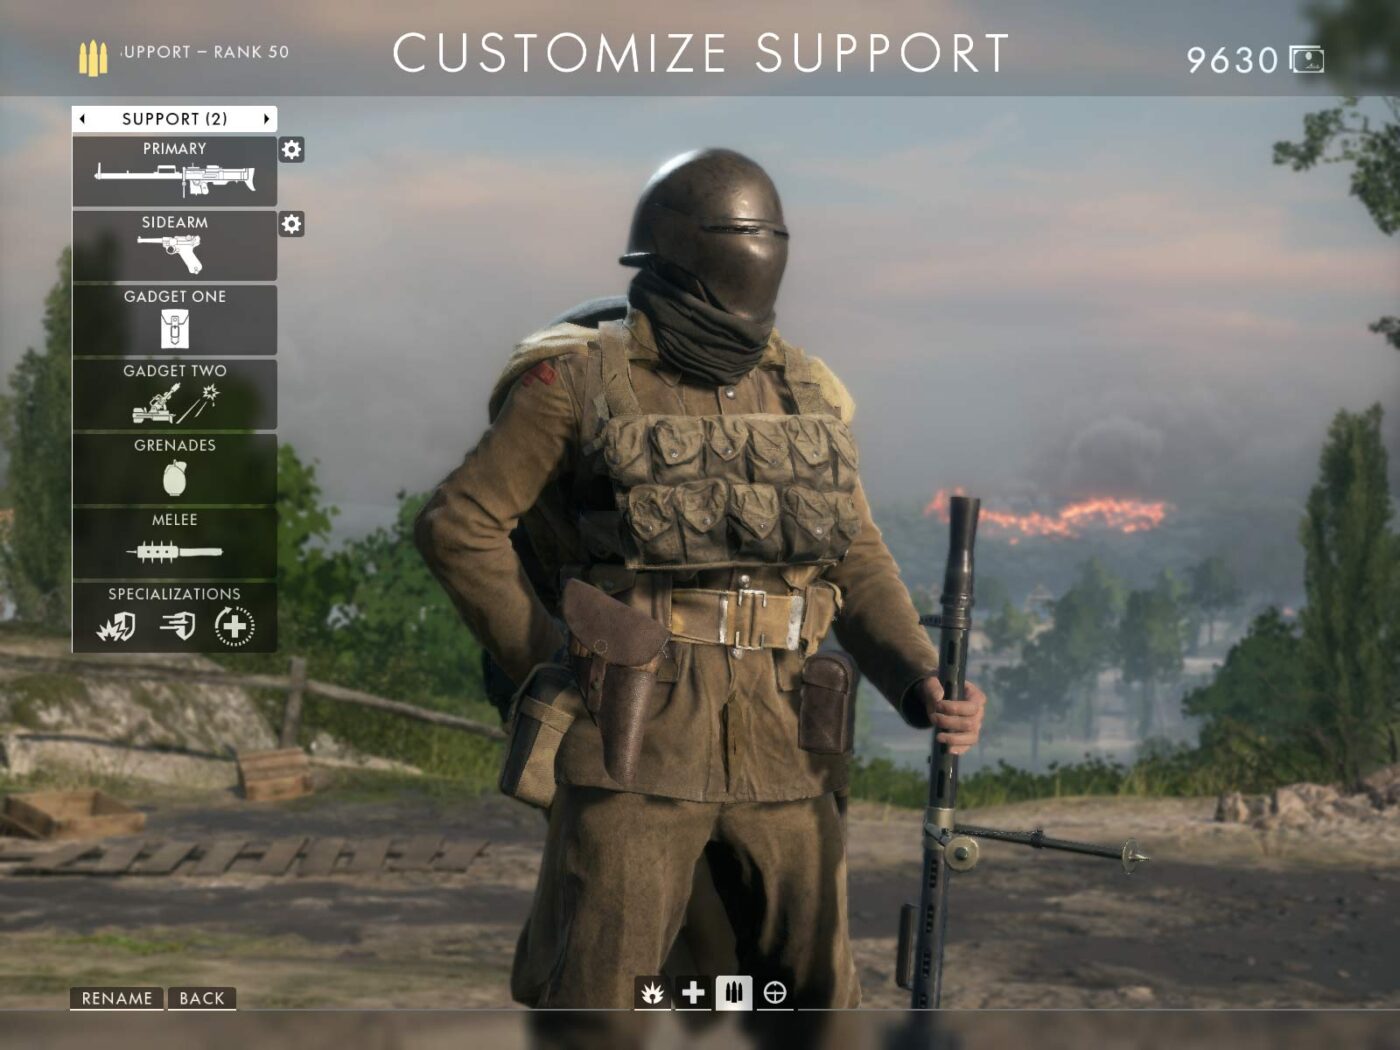 Model 8 helmet depicted in Battlefield 1